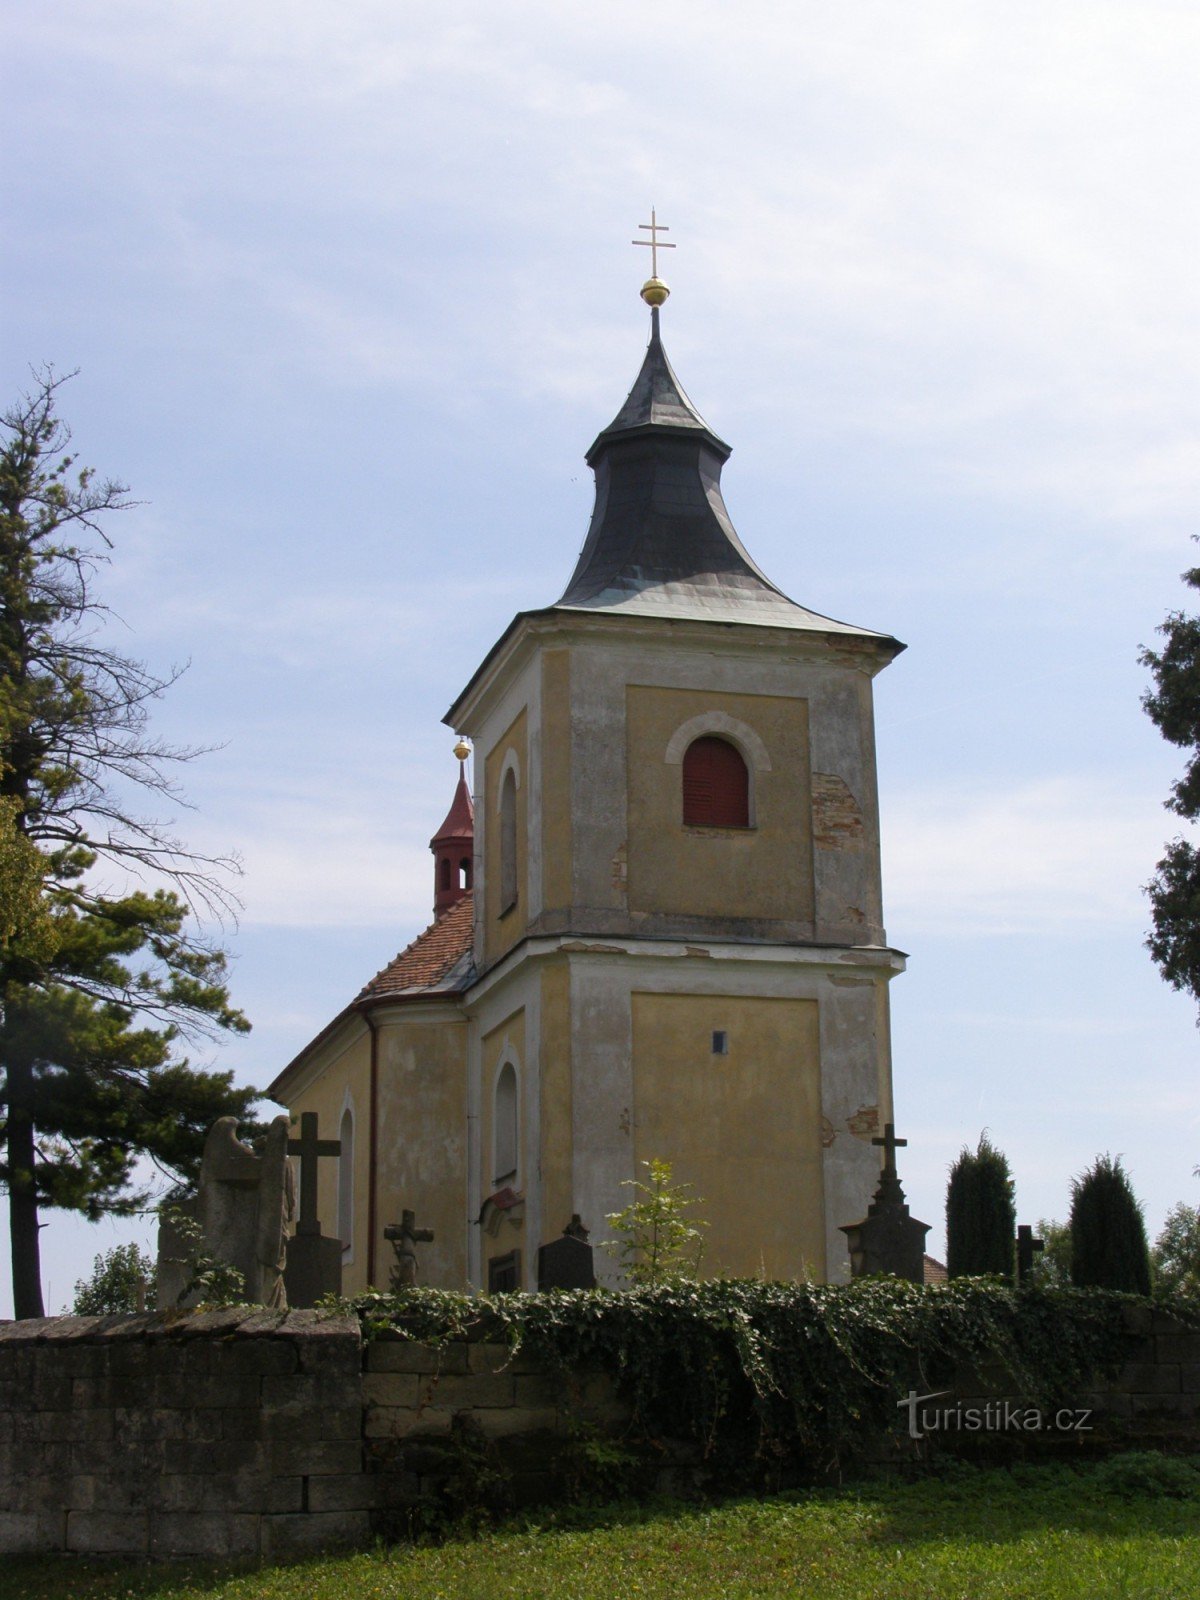 Chotěšice - Kerk van de zending van St. apostelen